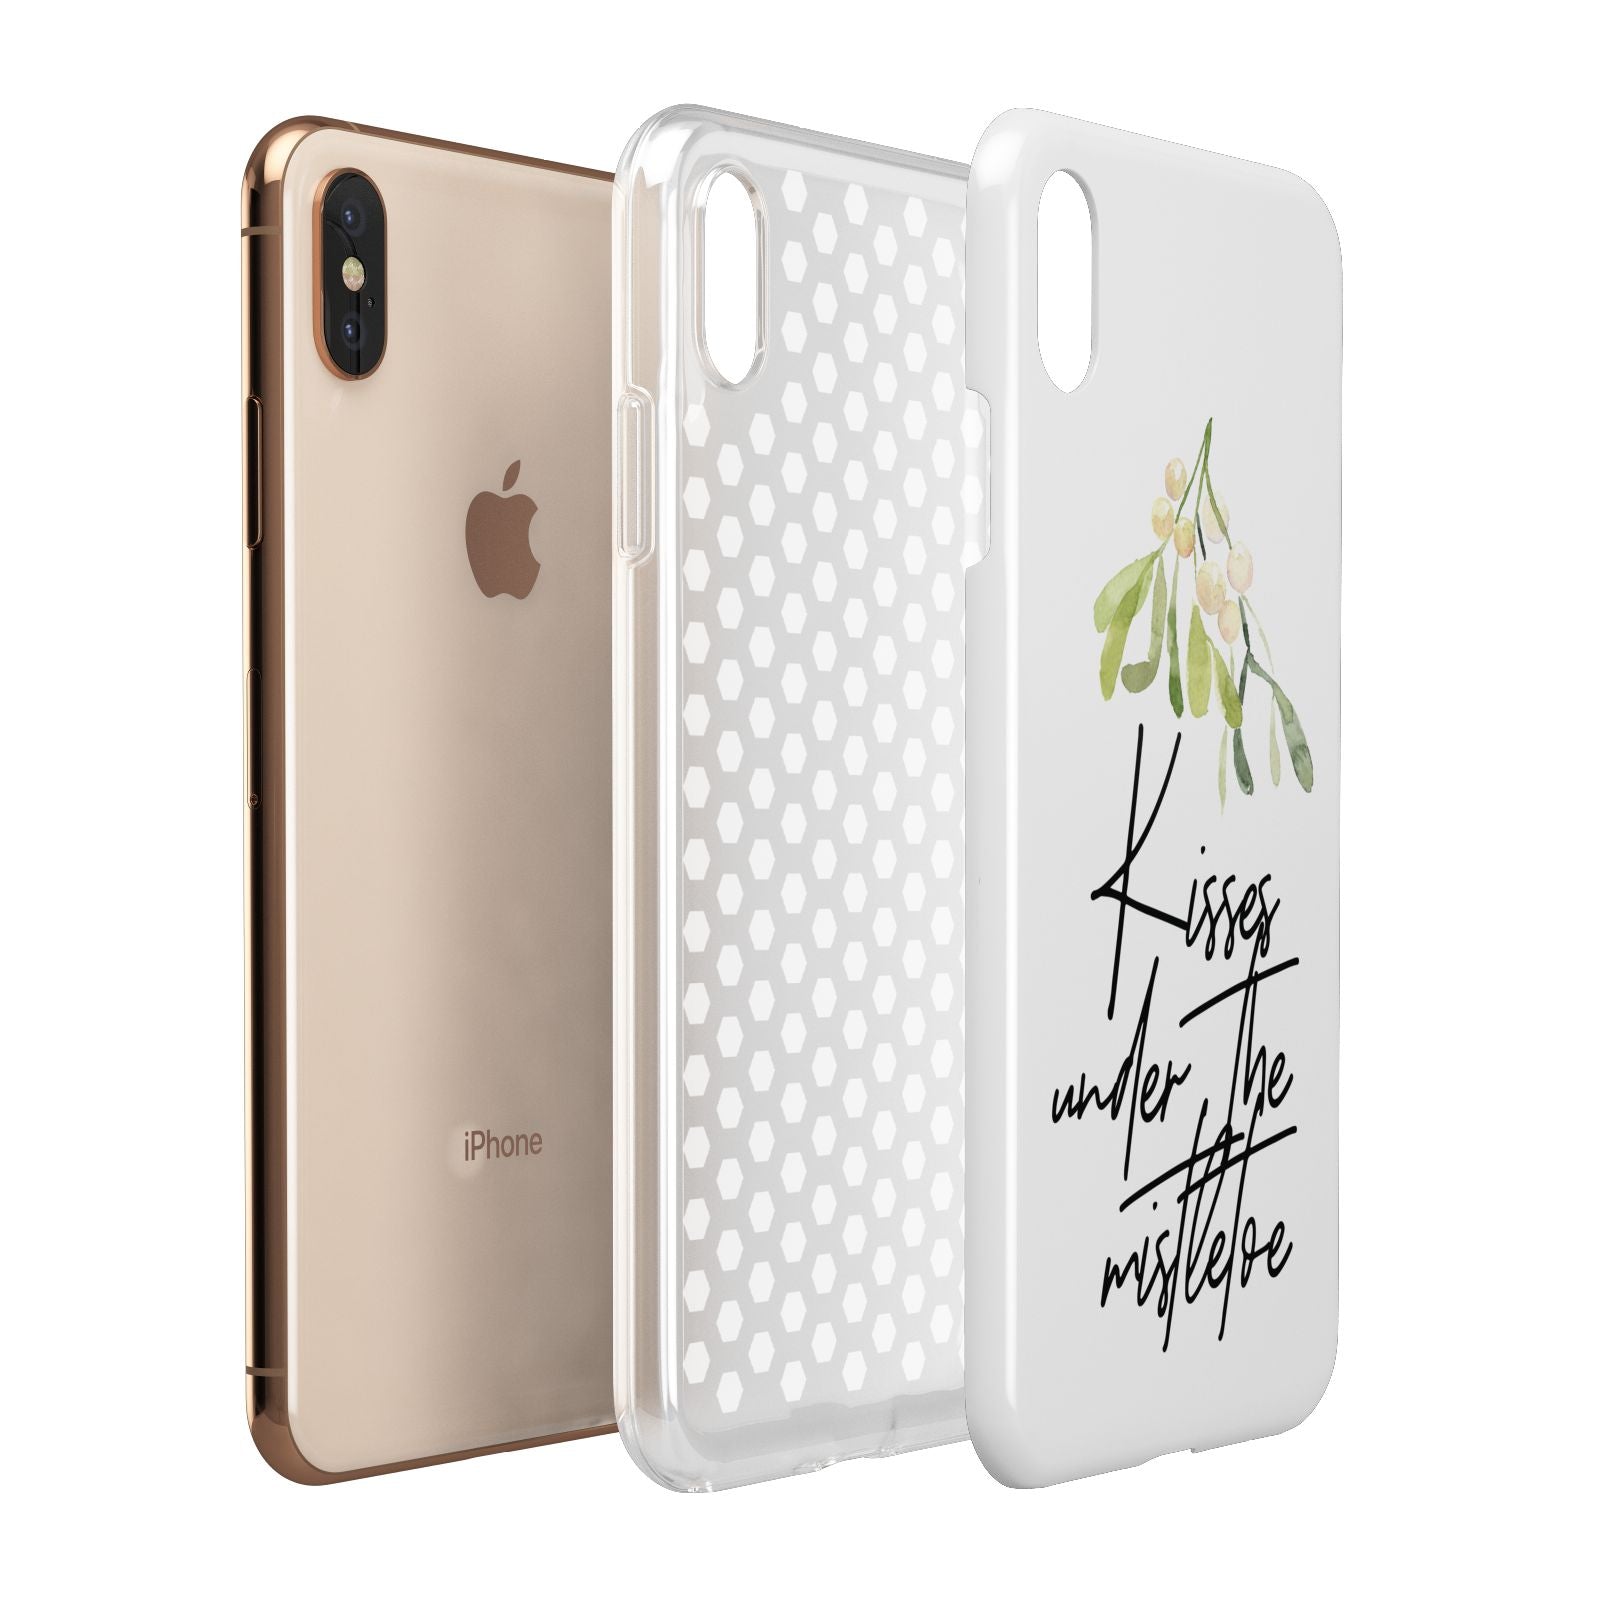 Kisses Under The Mistletoe Apple iPhone Xs Max 3D Tough Case Expanded View